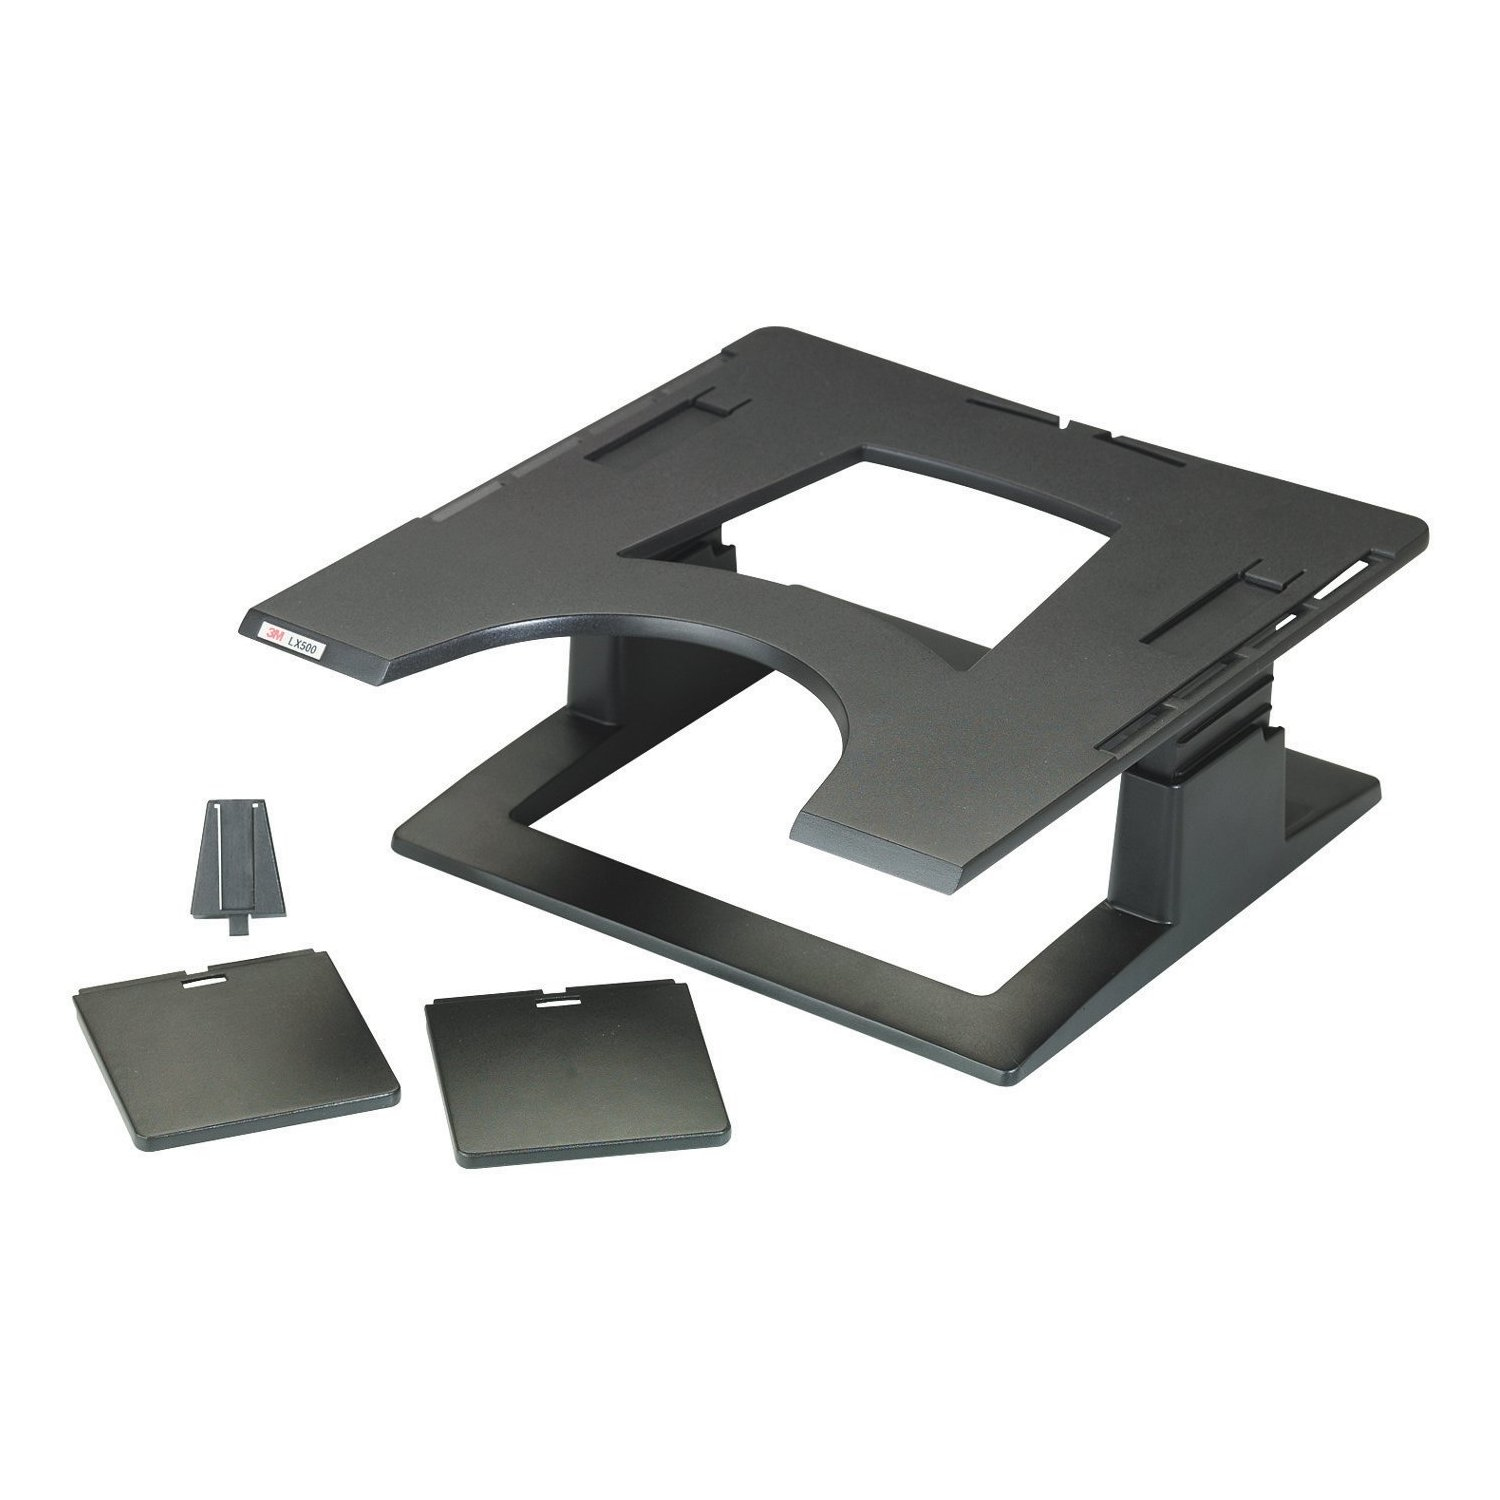 3M Adjustable Notebook Riser LX500 - Notebook platform - black